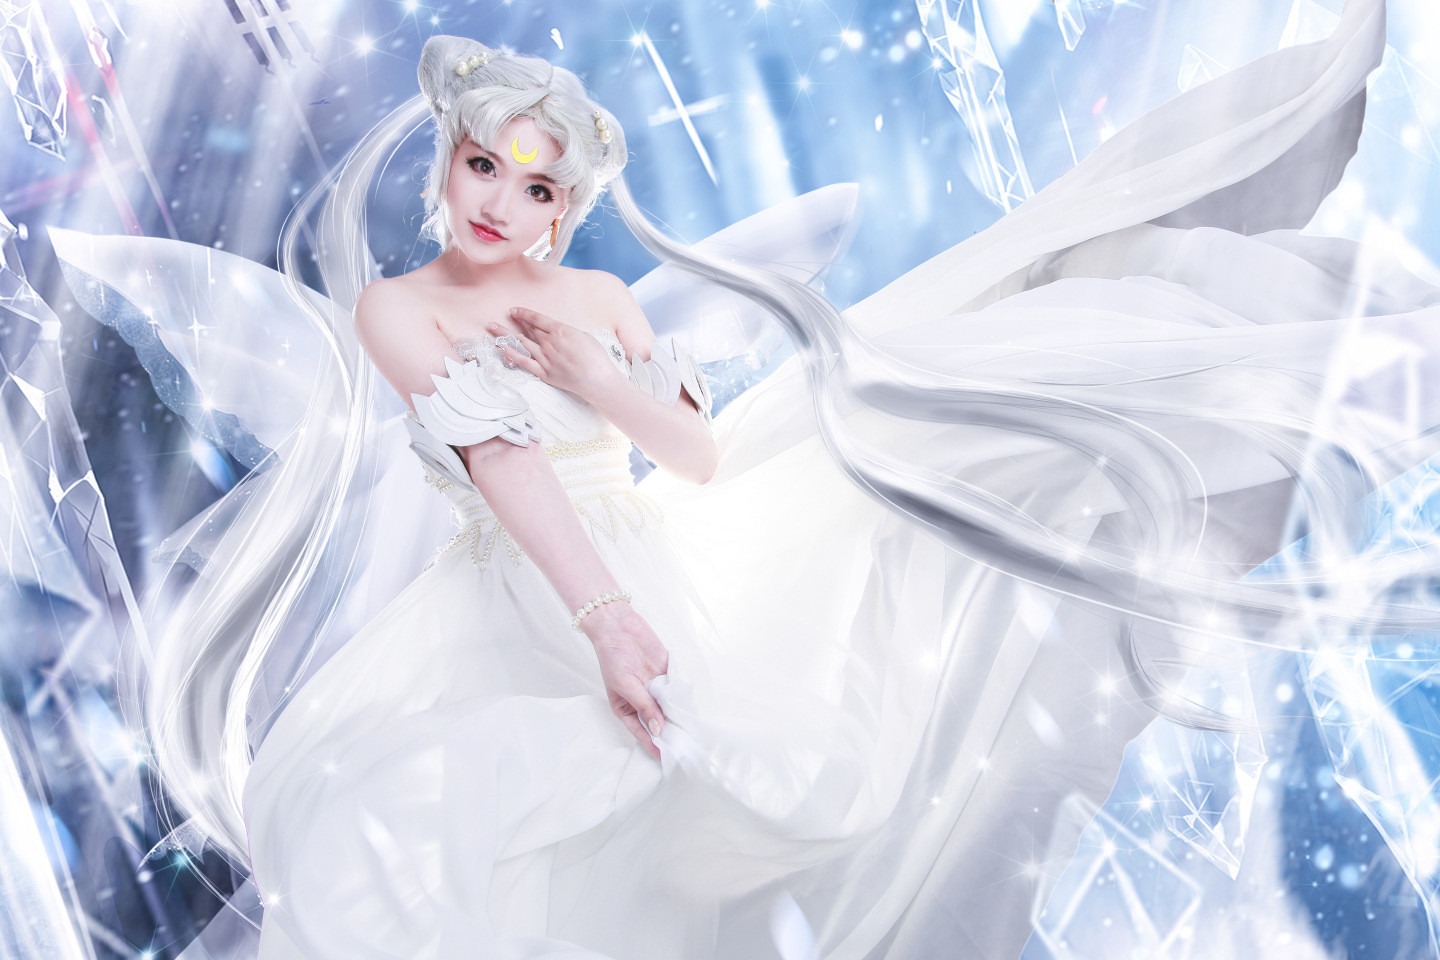 《美少女战士》星空中的倩妮迪公主cosplay图片第3张